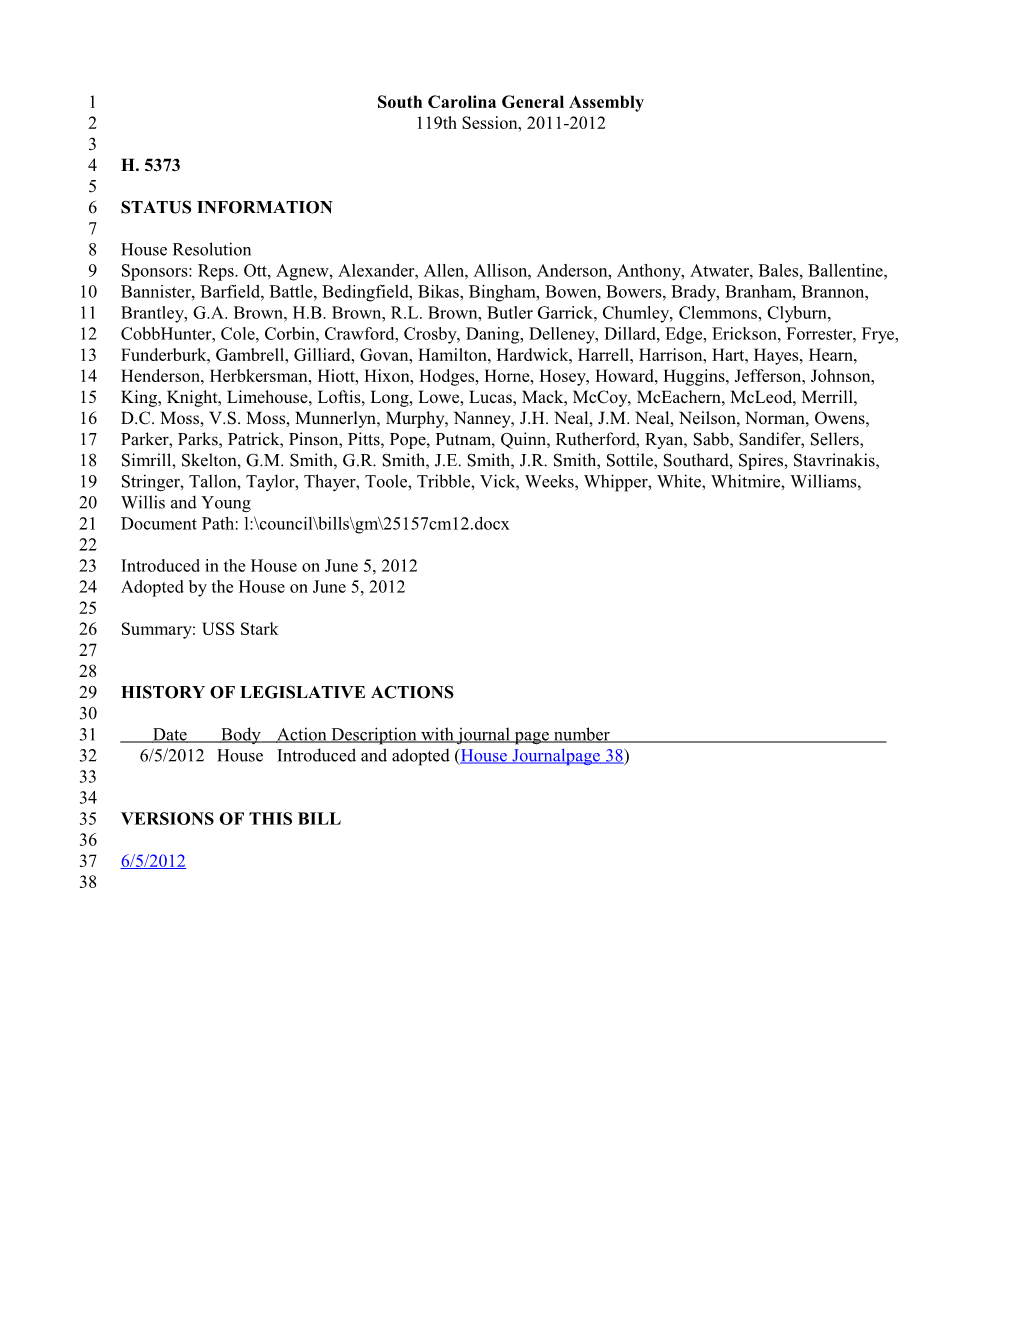 2011-2012 Bill 5373: USS Stark - South Carolina Legislature Online